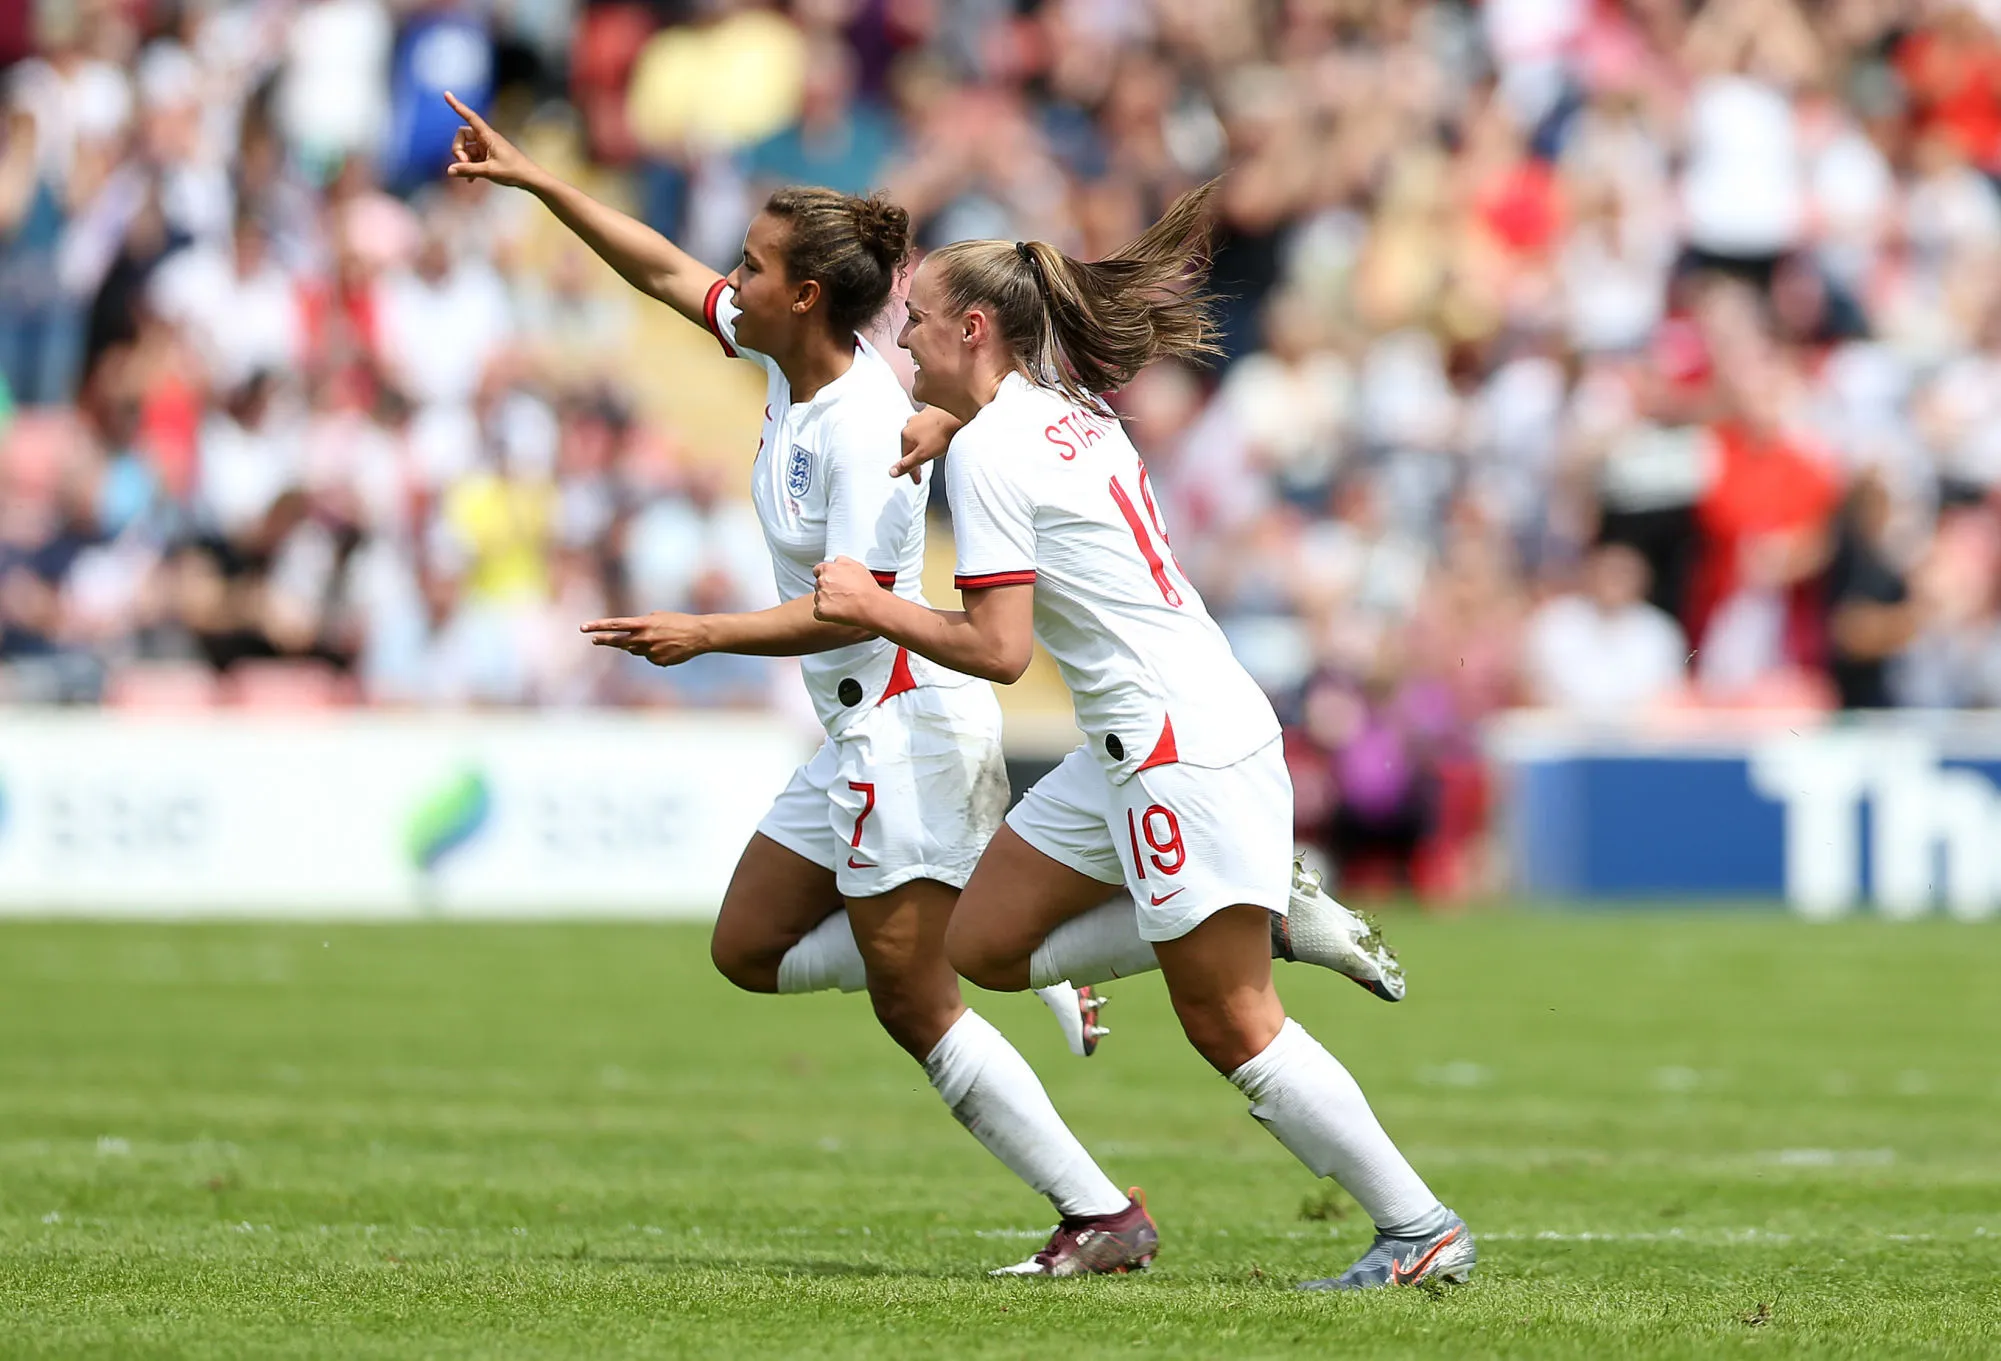 Pronostic Norvège Angleterre : Analyse, prono et cotes du match de la Coupe du monde féminine 2019